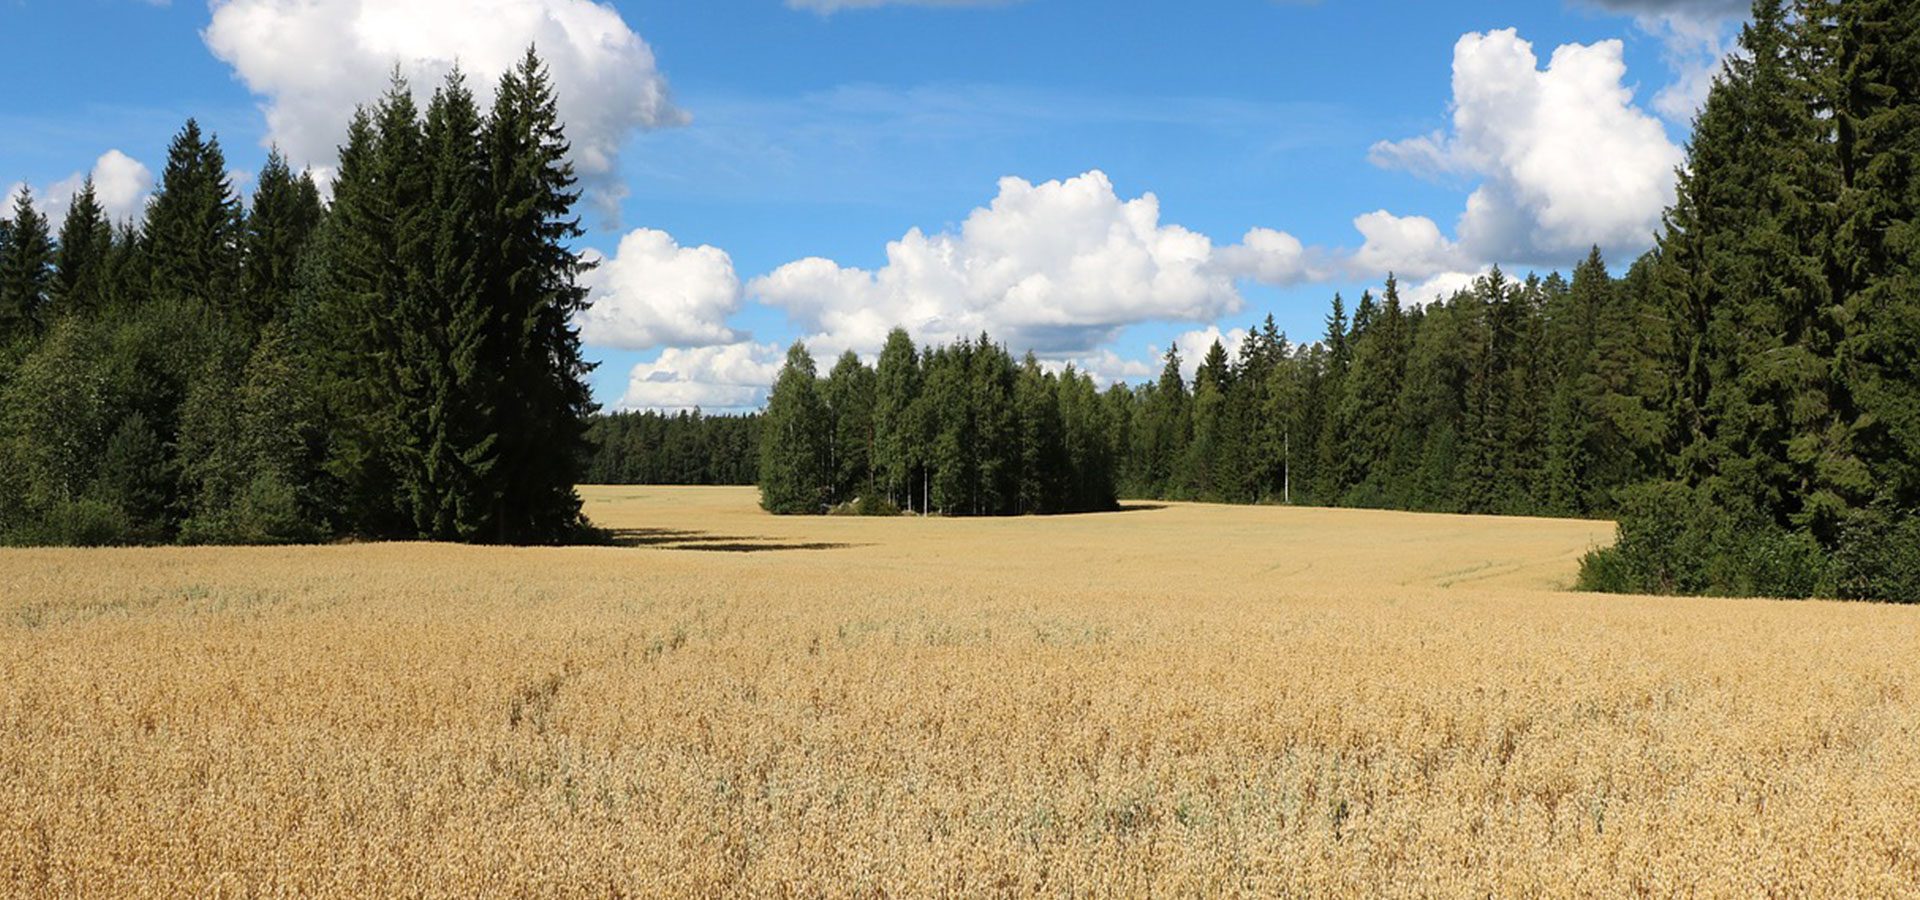 1920x900 oats field